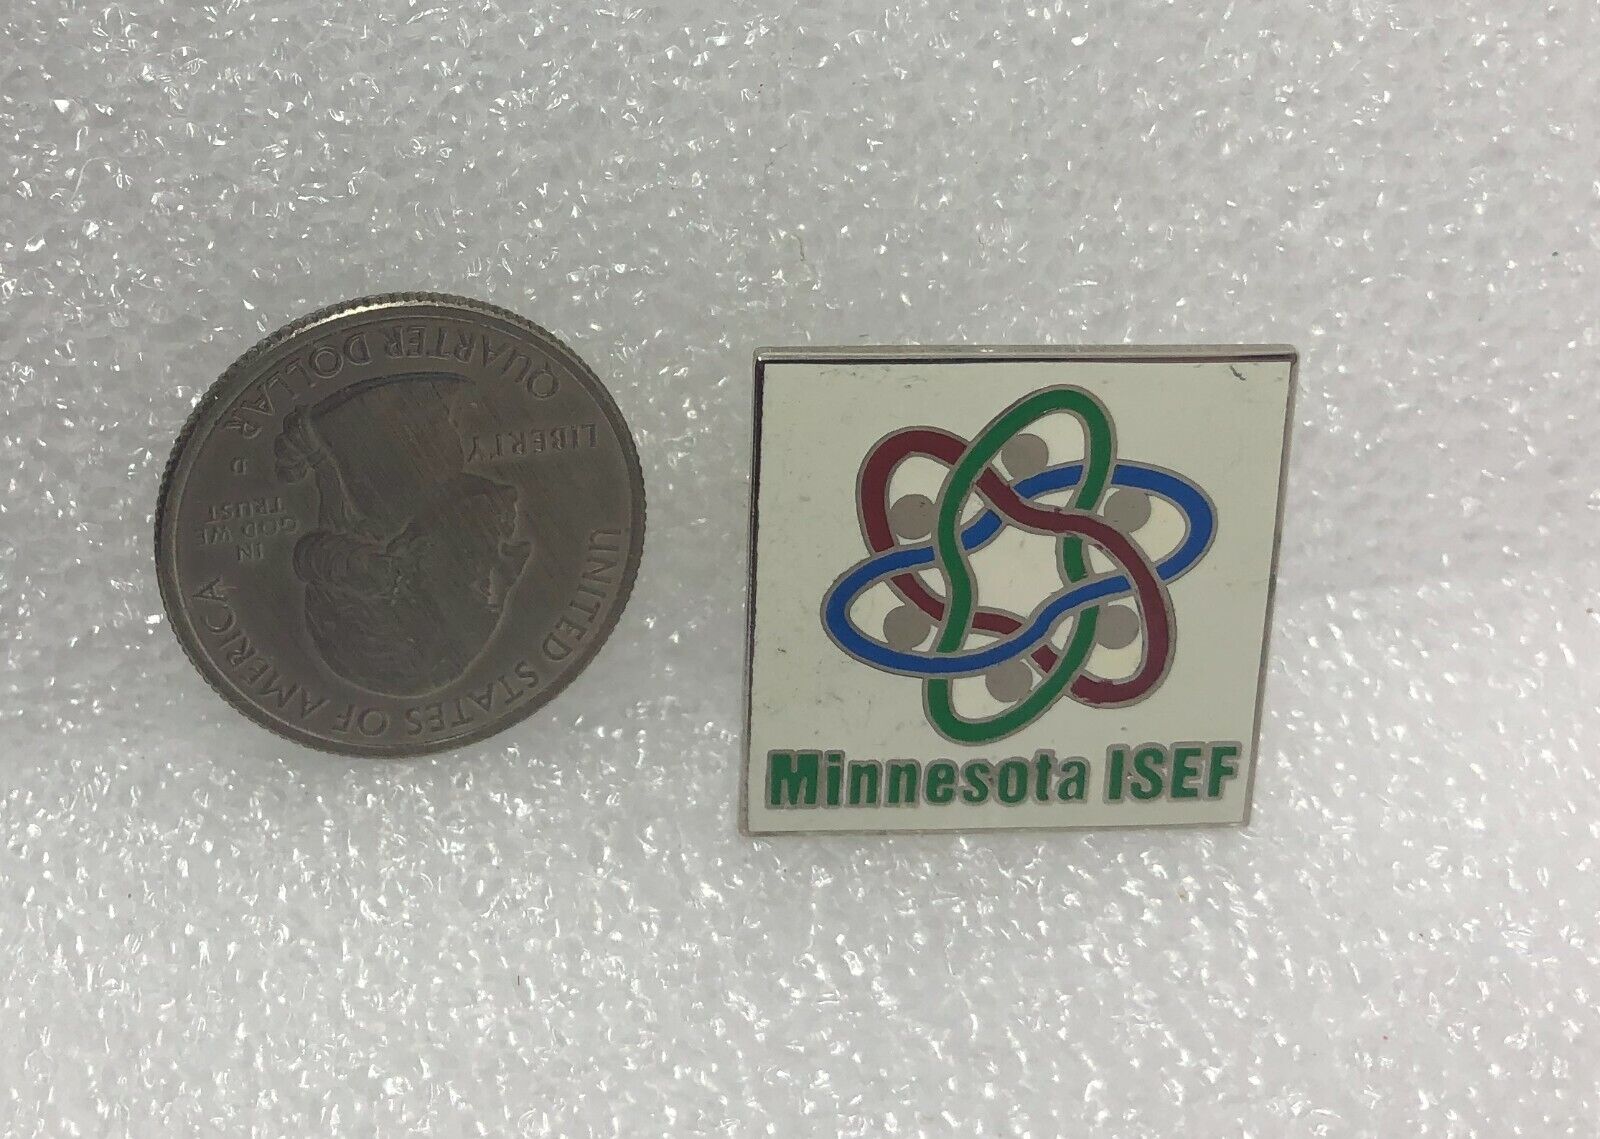 Minnesota ISEF Pin